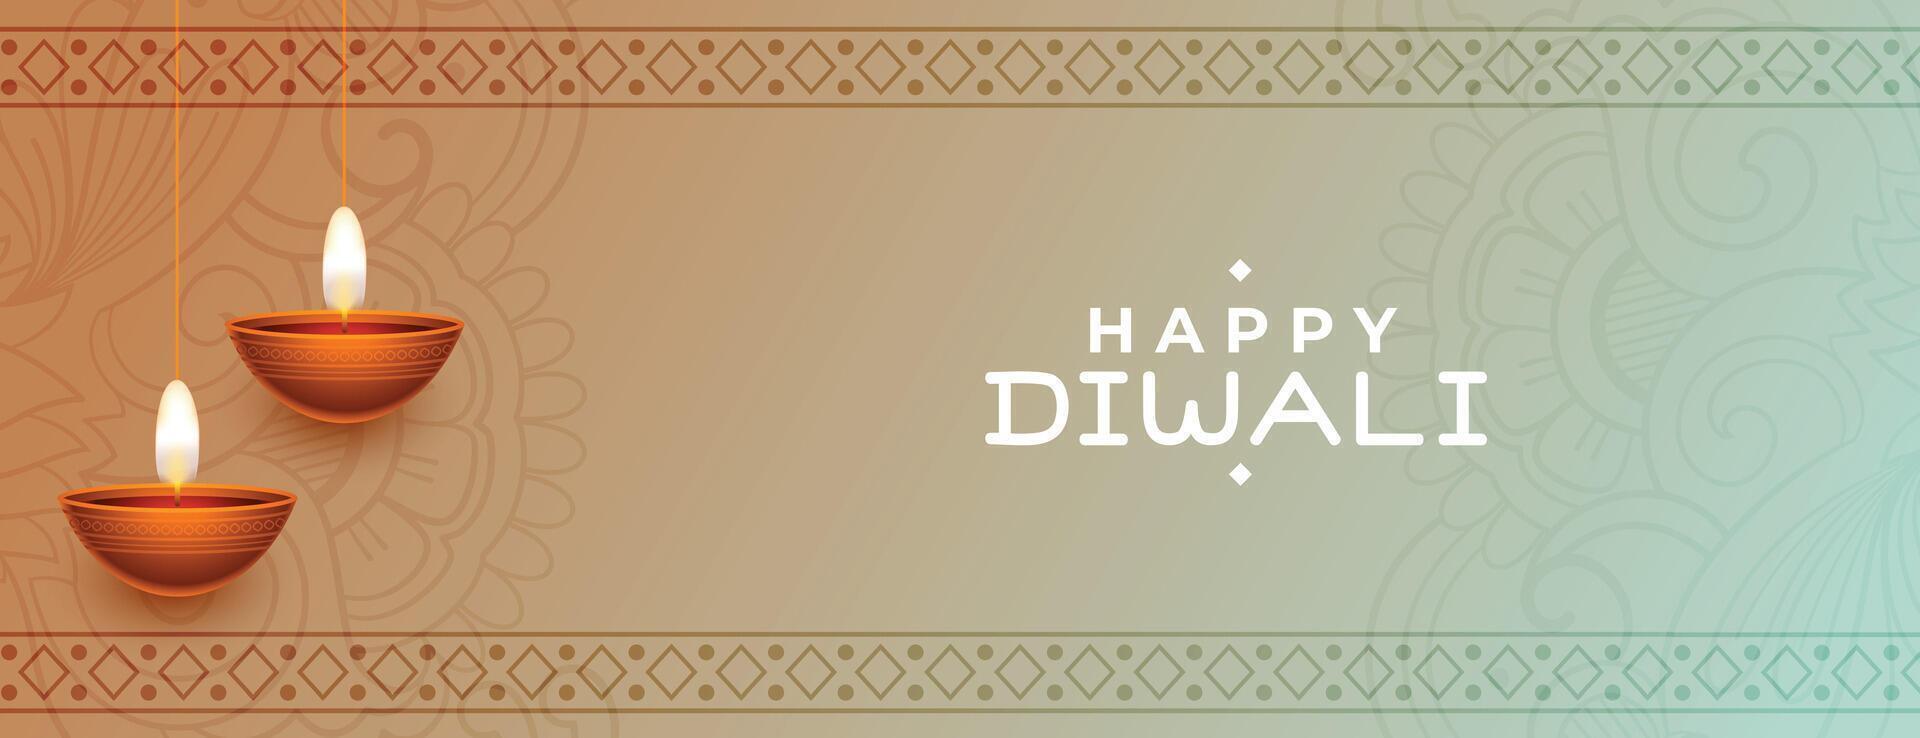 contento Diwali vacanza bandiera con diya decorazione vettore